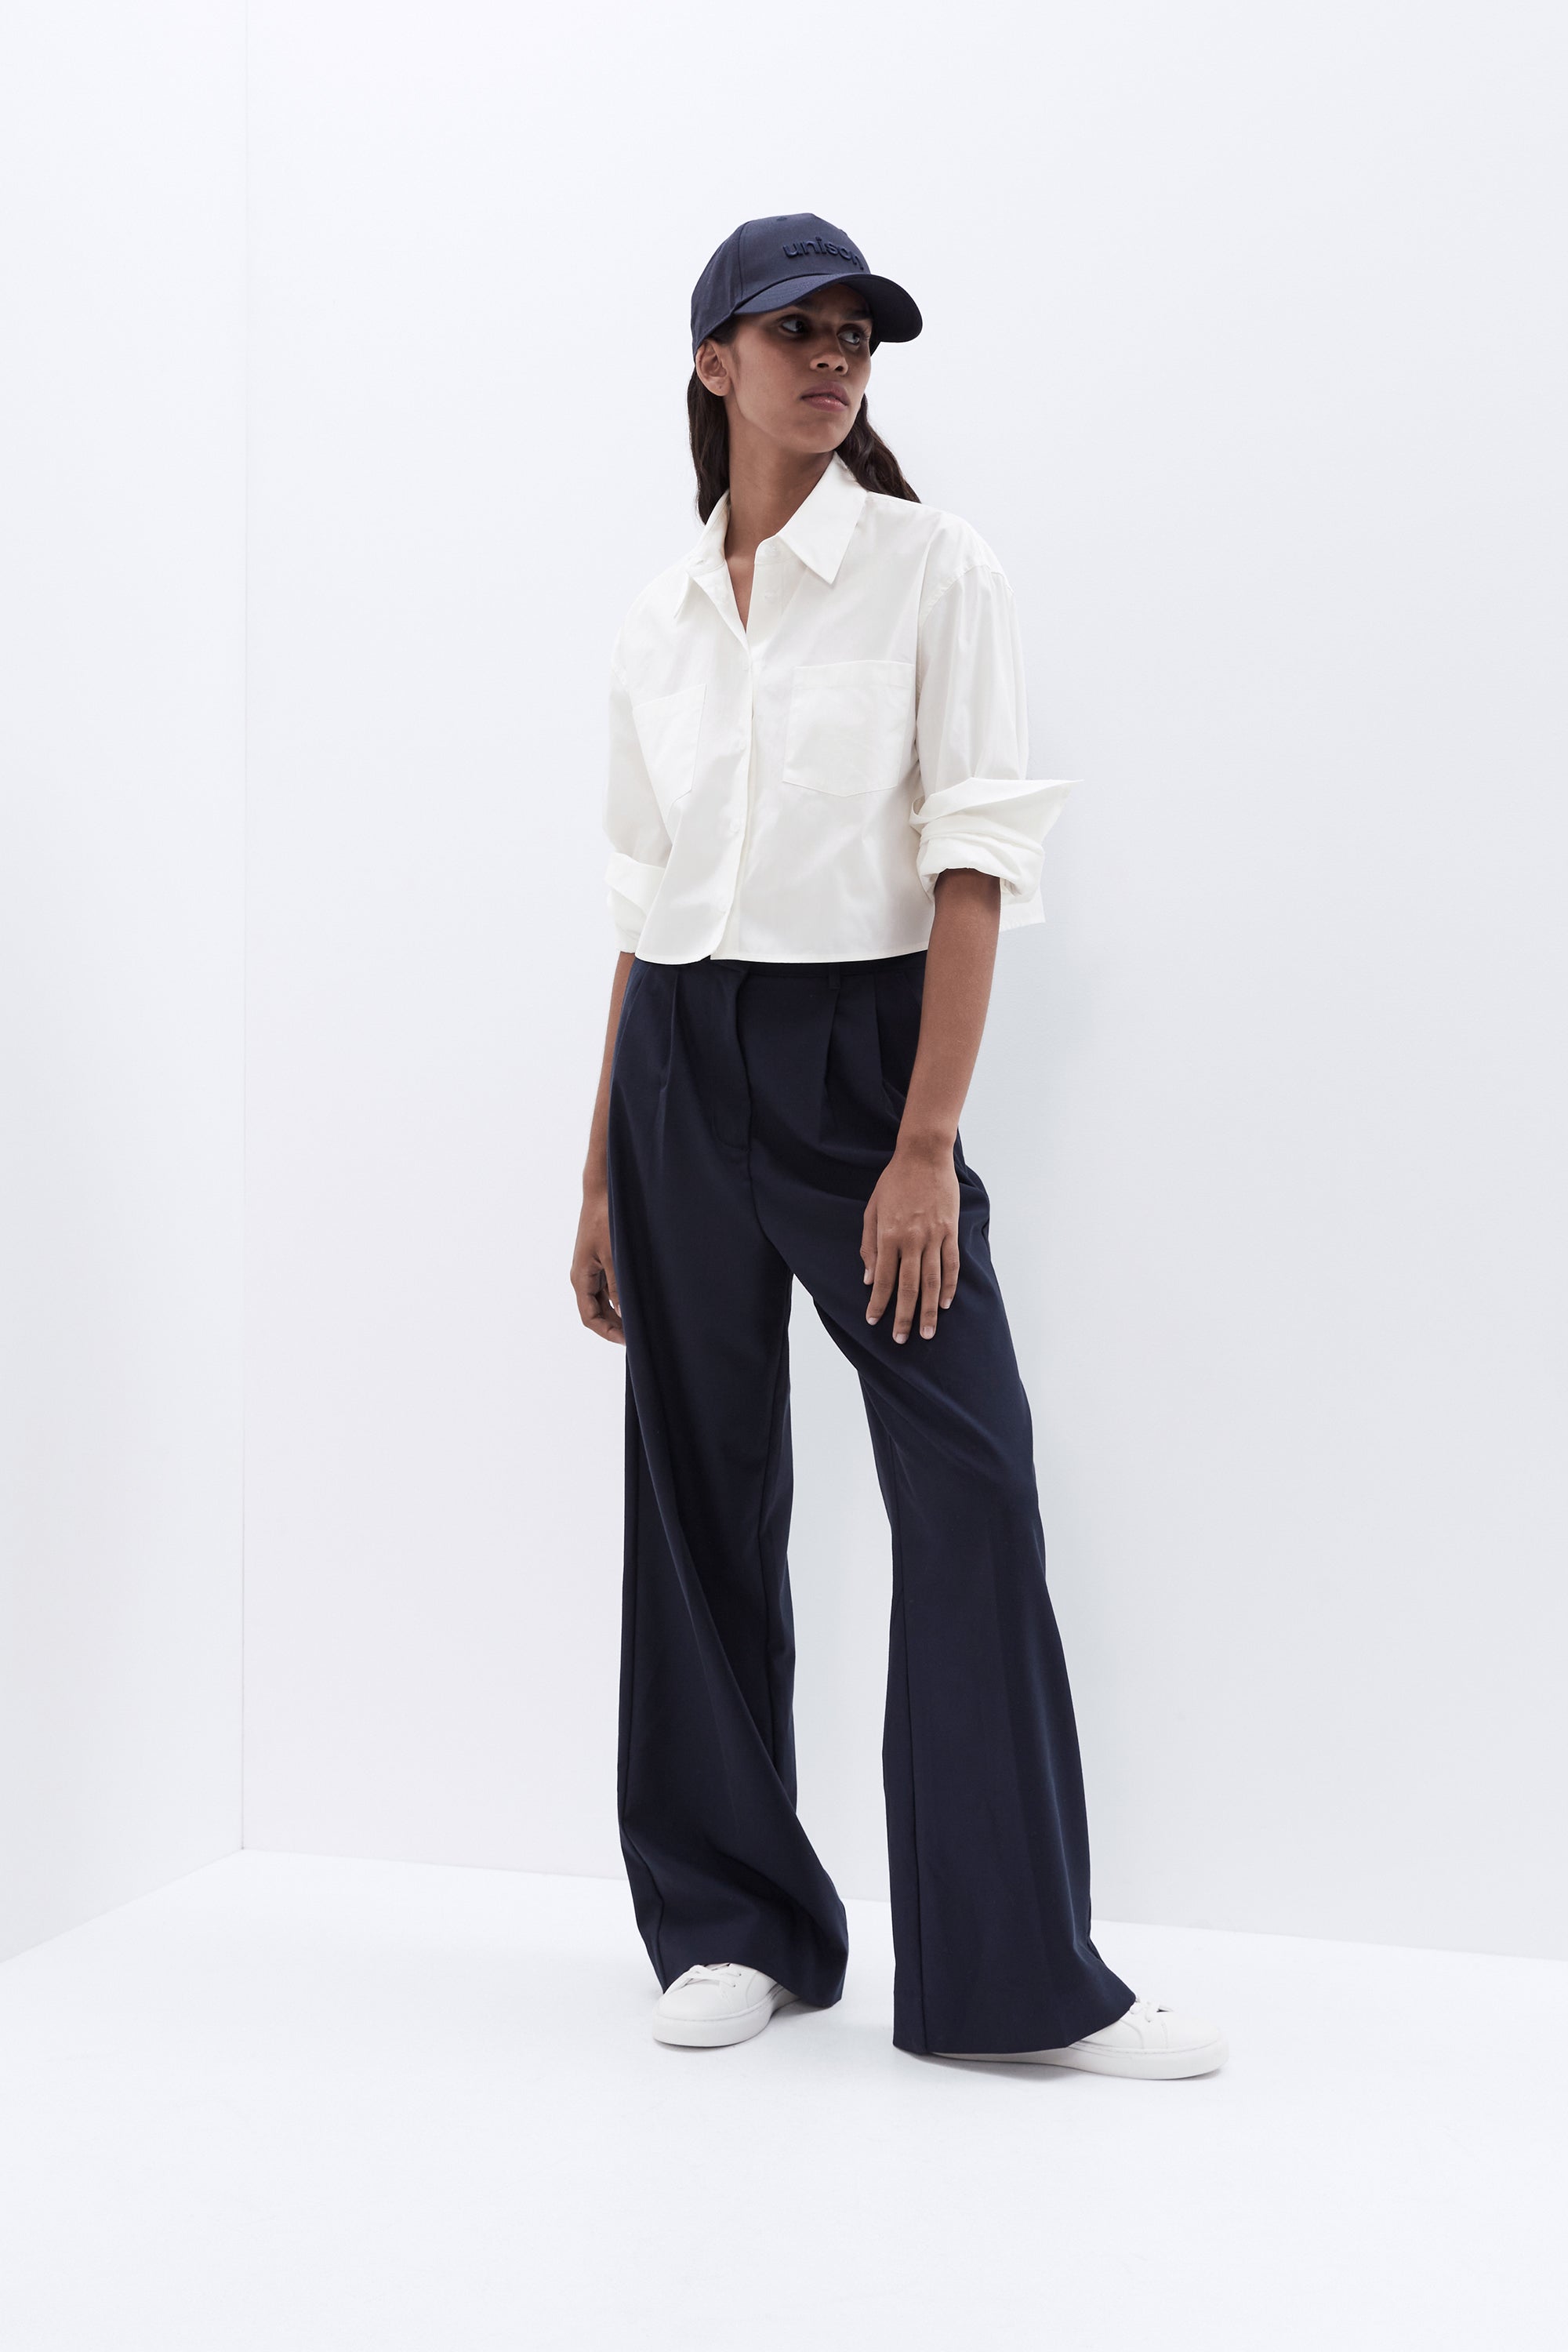 XFLWAM Womens Cotton Linen Tops Crew Neck Long Sleeve Button Shirts Summer  Causal Print Blouse Beige XL 